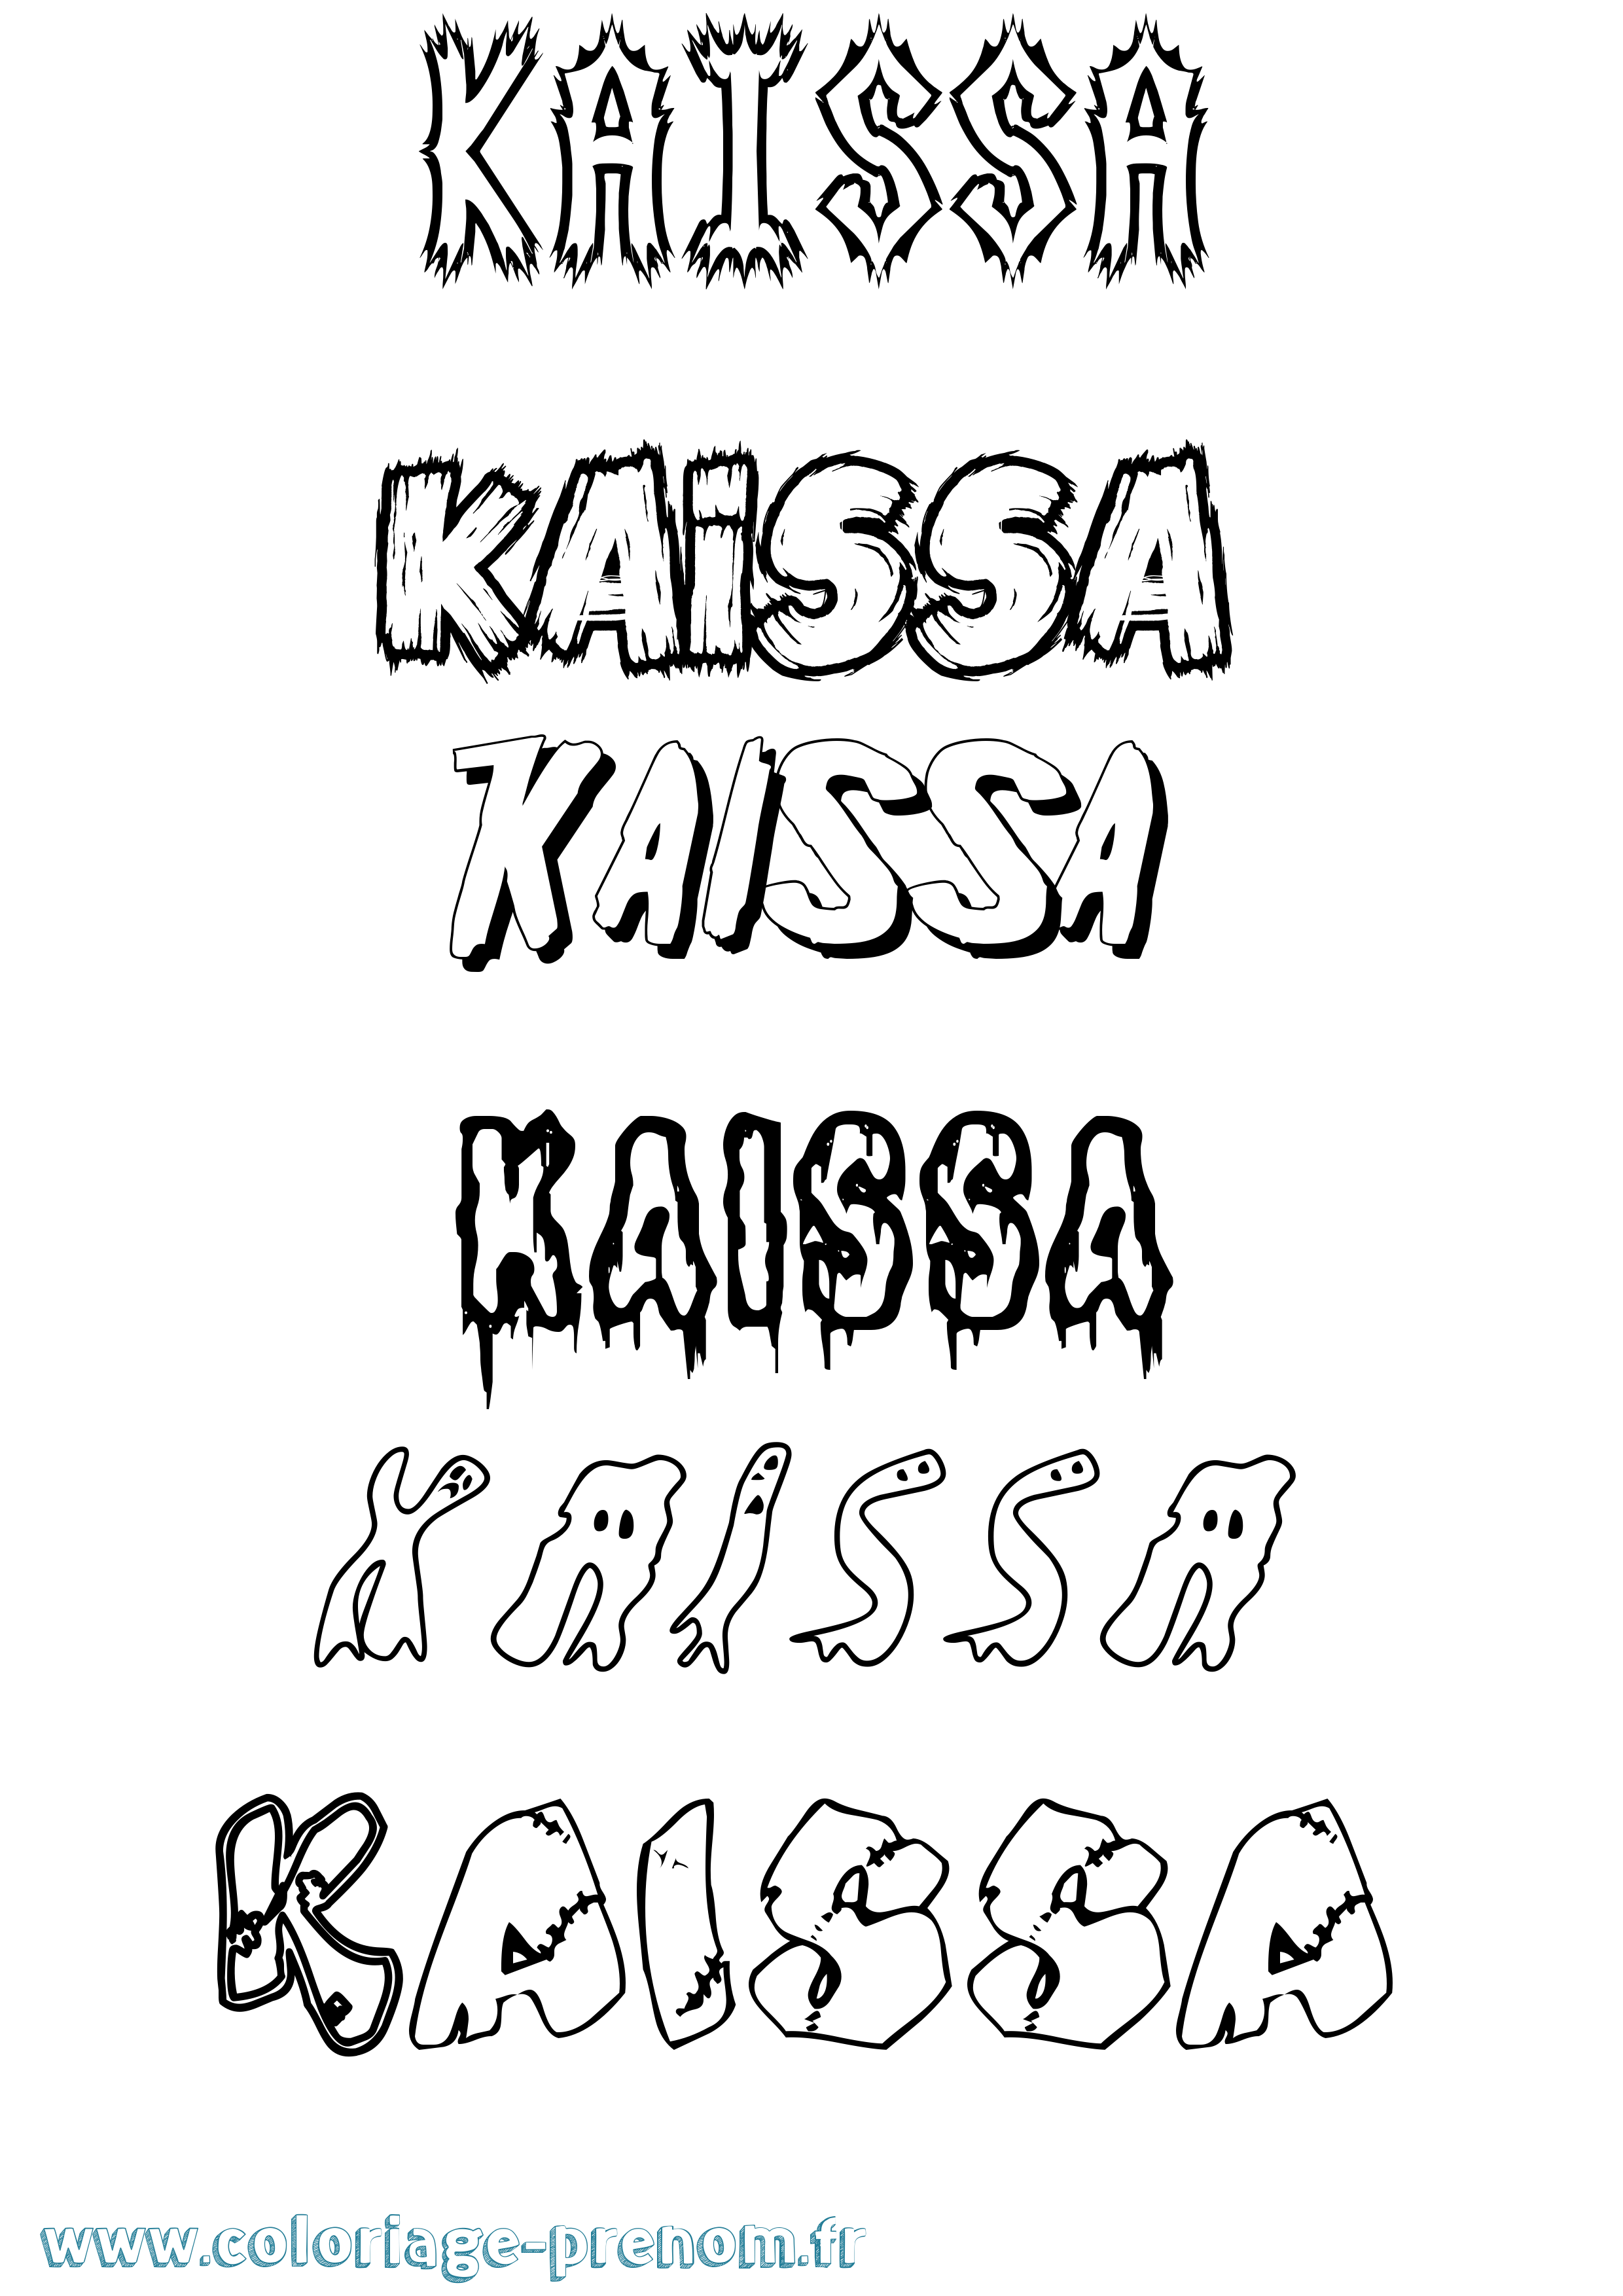 Coloriage prénom Kaissa Frisson